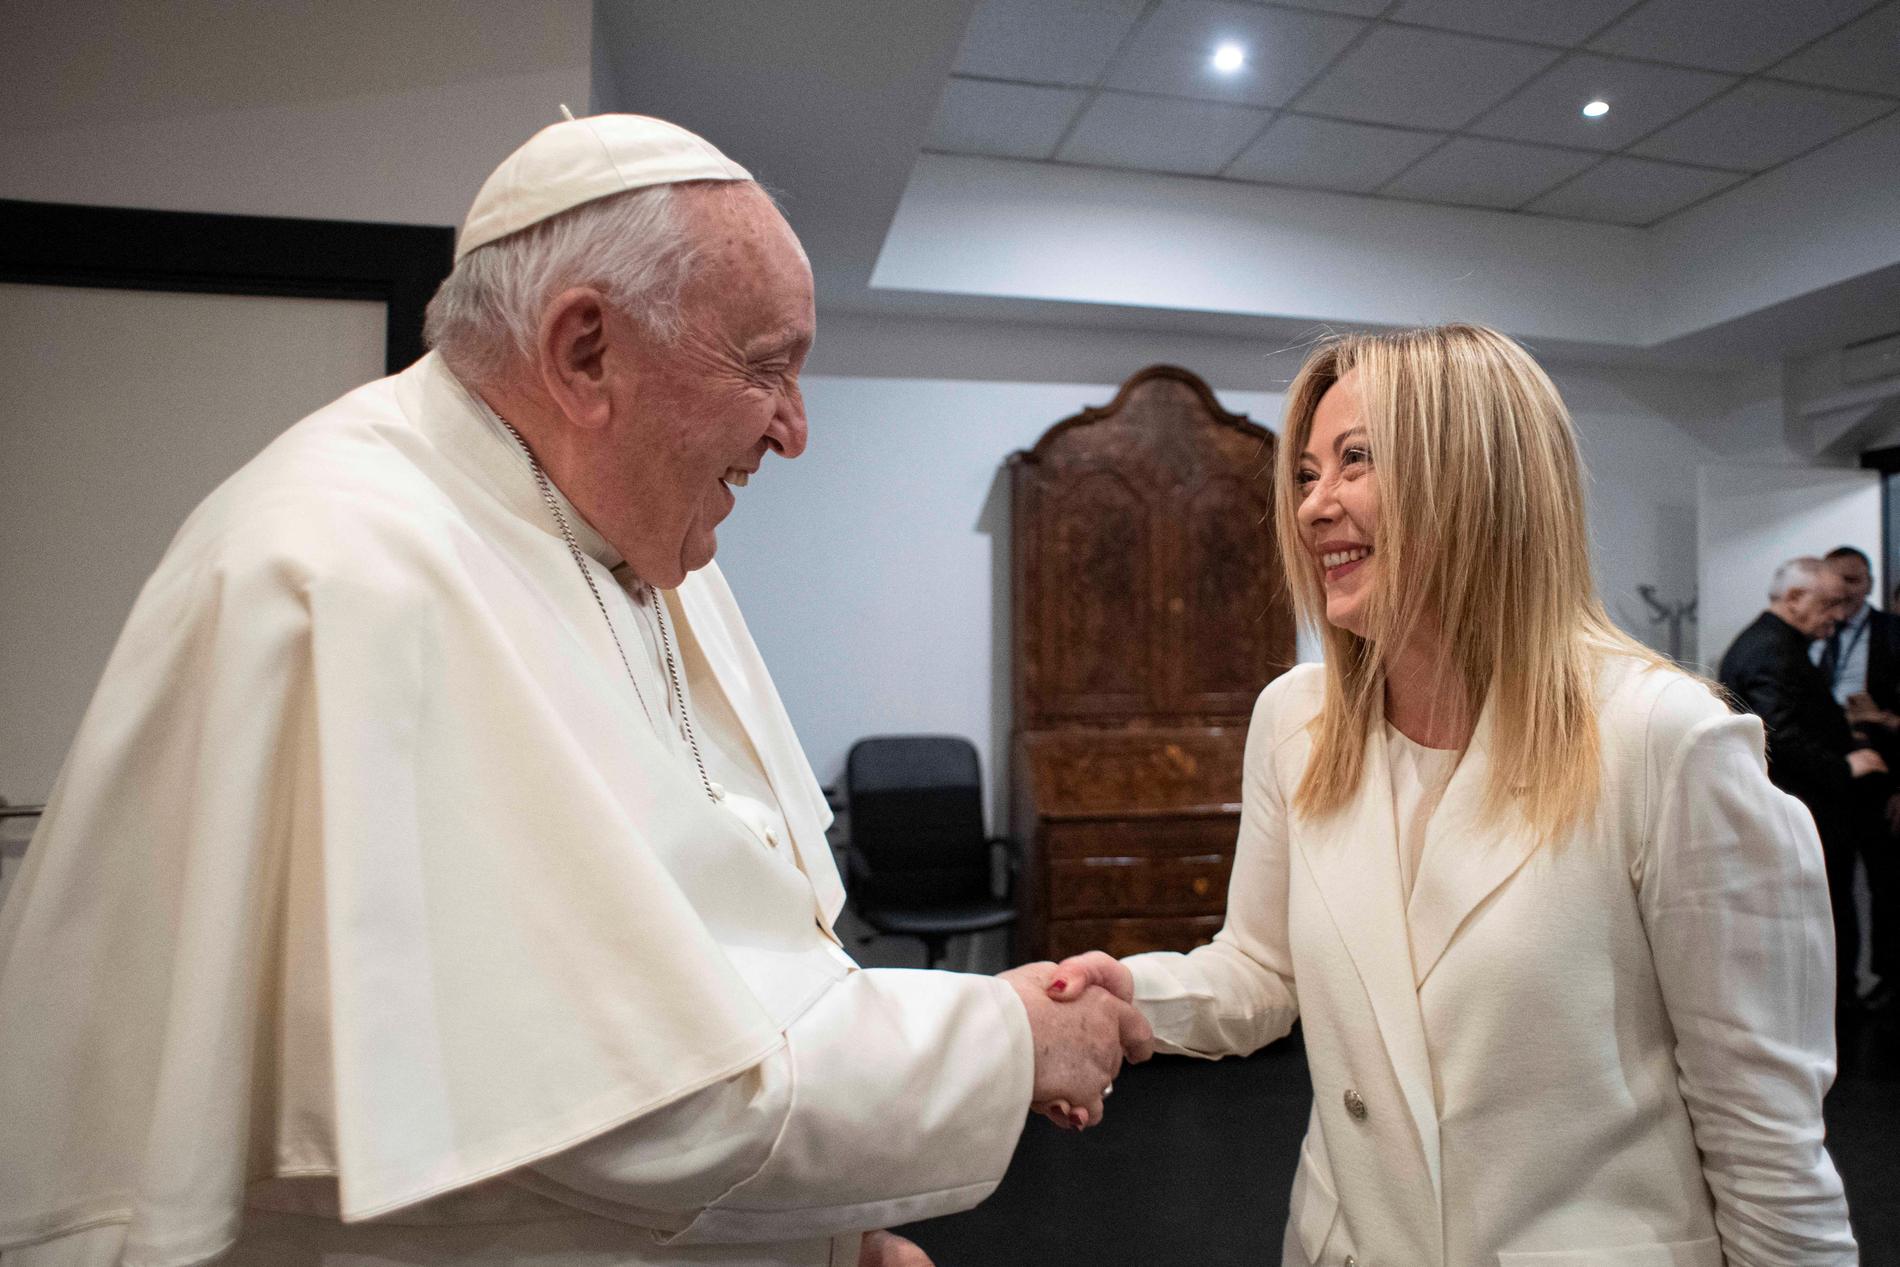 VALORE CONSERVATIVO: Giorgia Meloni ha incontrato e parlato più volte con Papa Francesco.